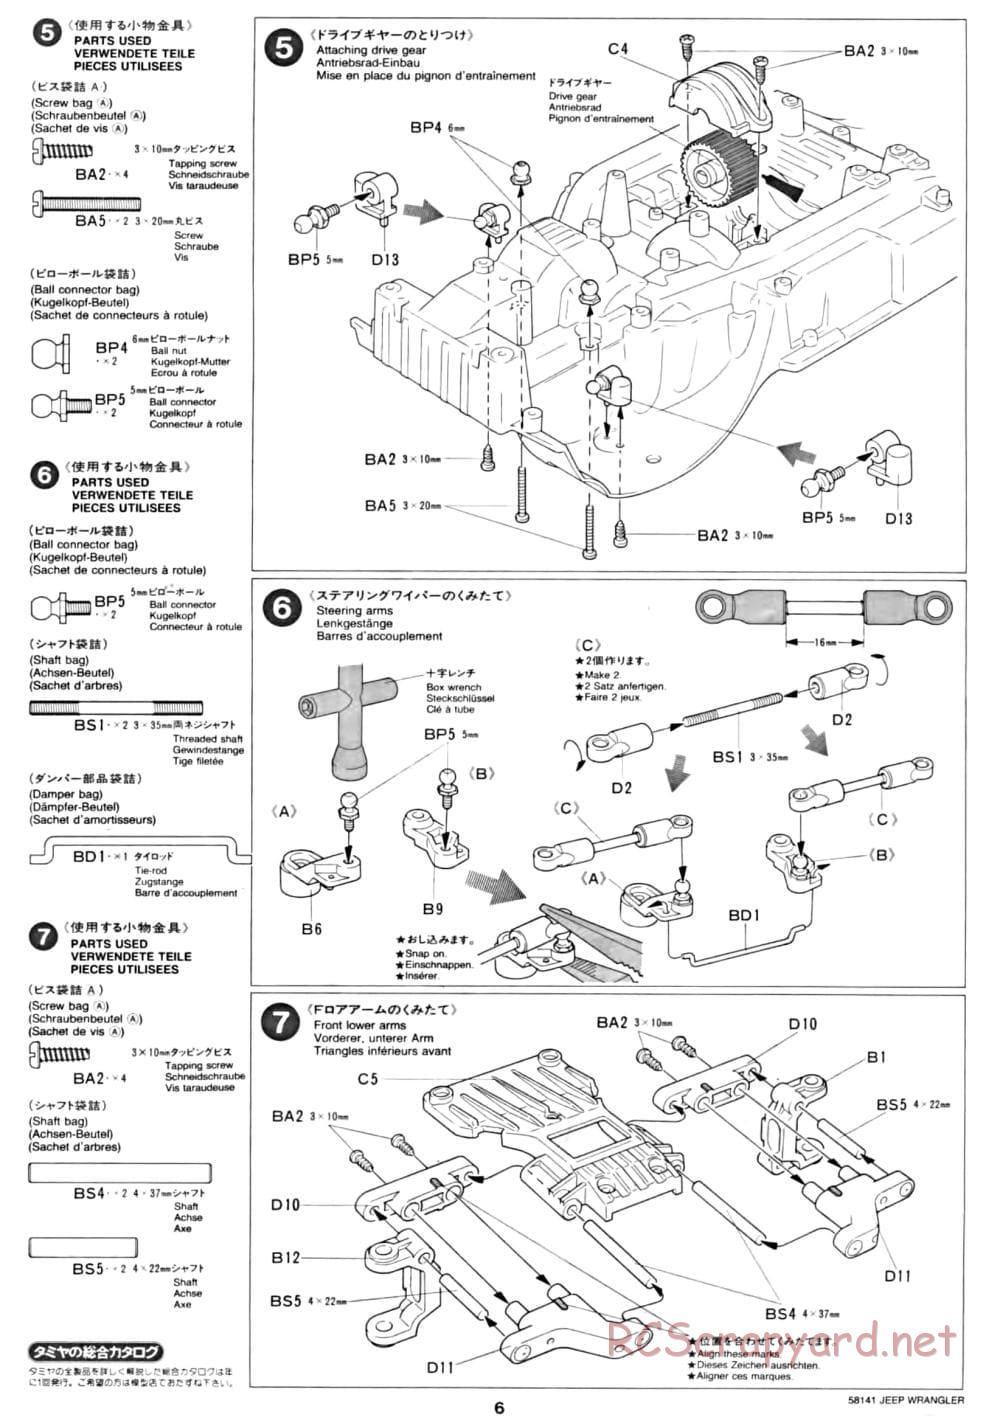 Tamiya - Jeep Wrangler - CC-01 Chassis - Manual - Page 6